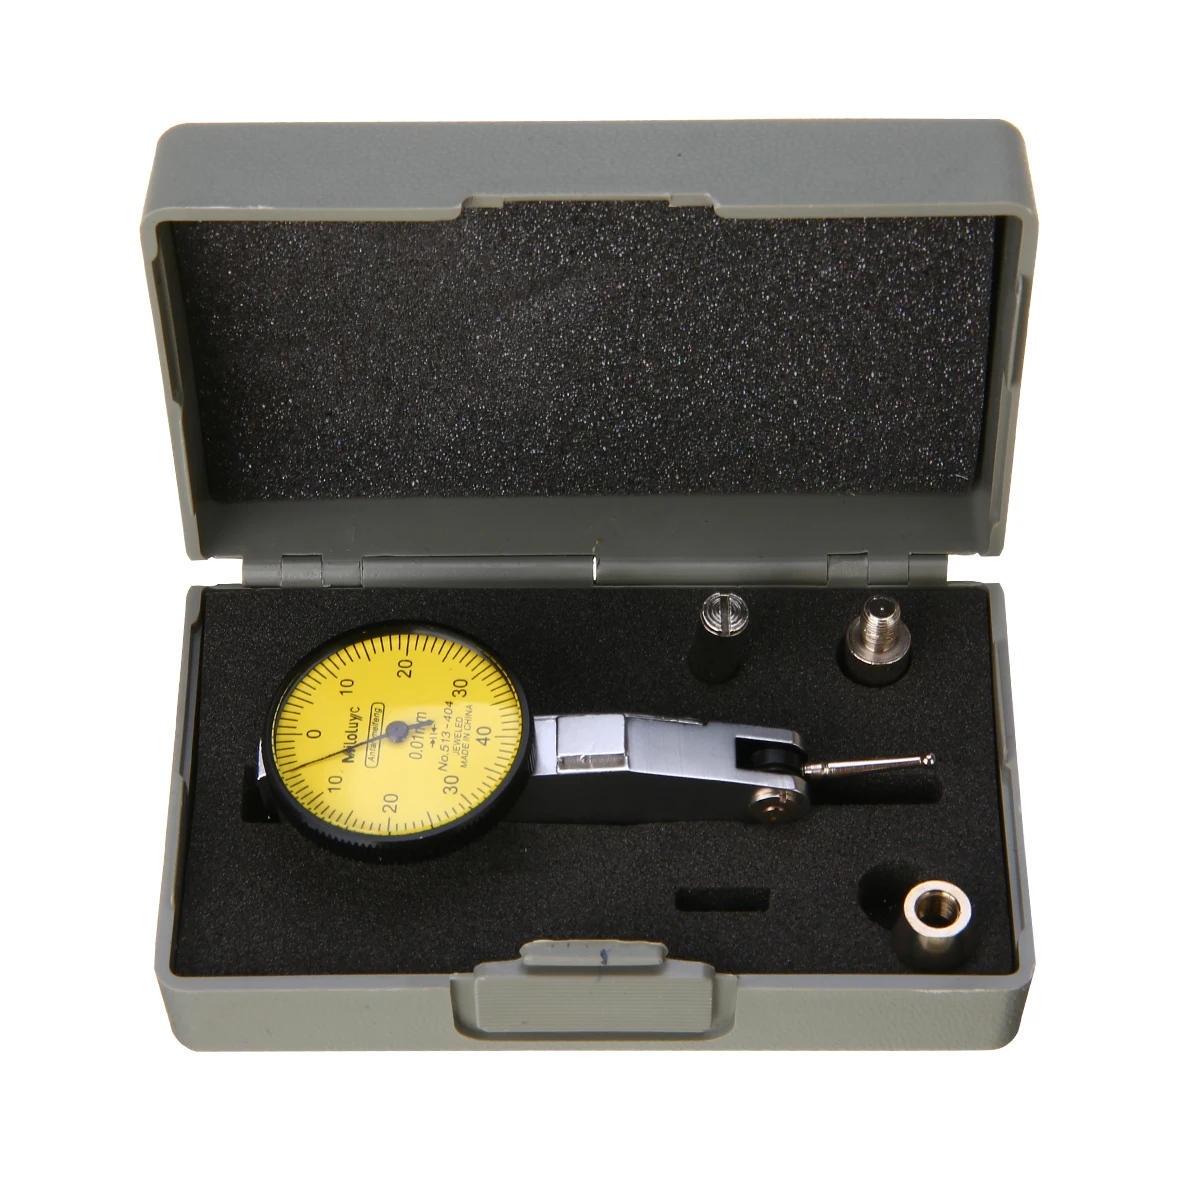 Высокая точность метрический измерительный инструмент металлический мини-шкала индикатор проверки ing с рельсами ласточкин хвост 0-40-0 0,01 мм с коробкой